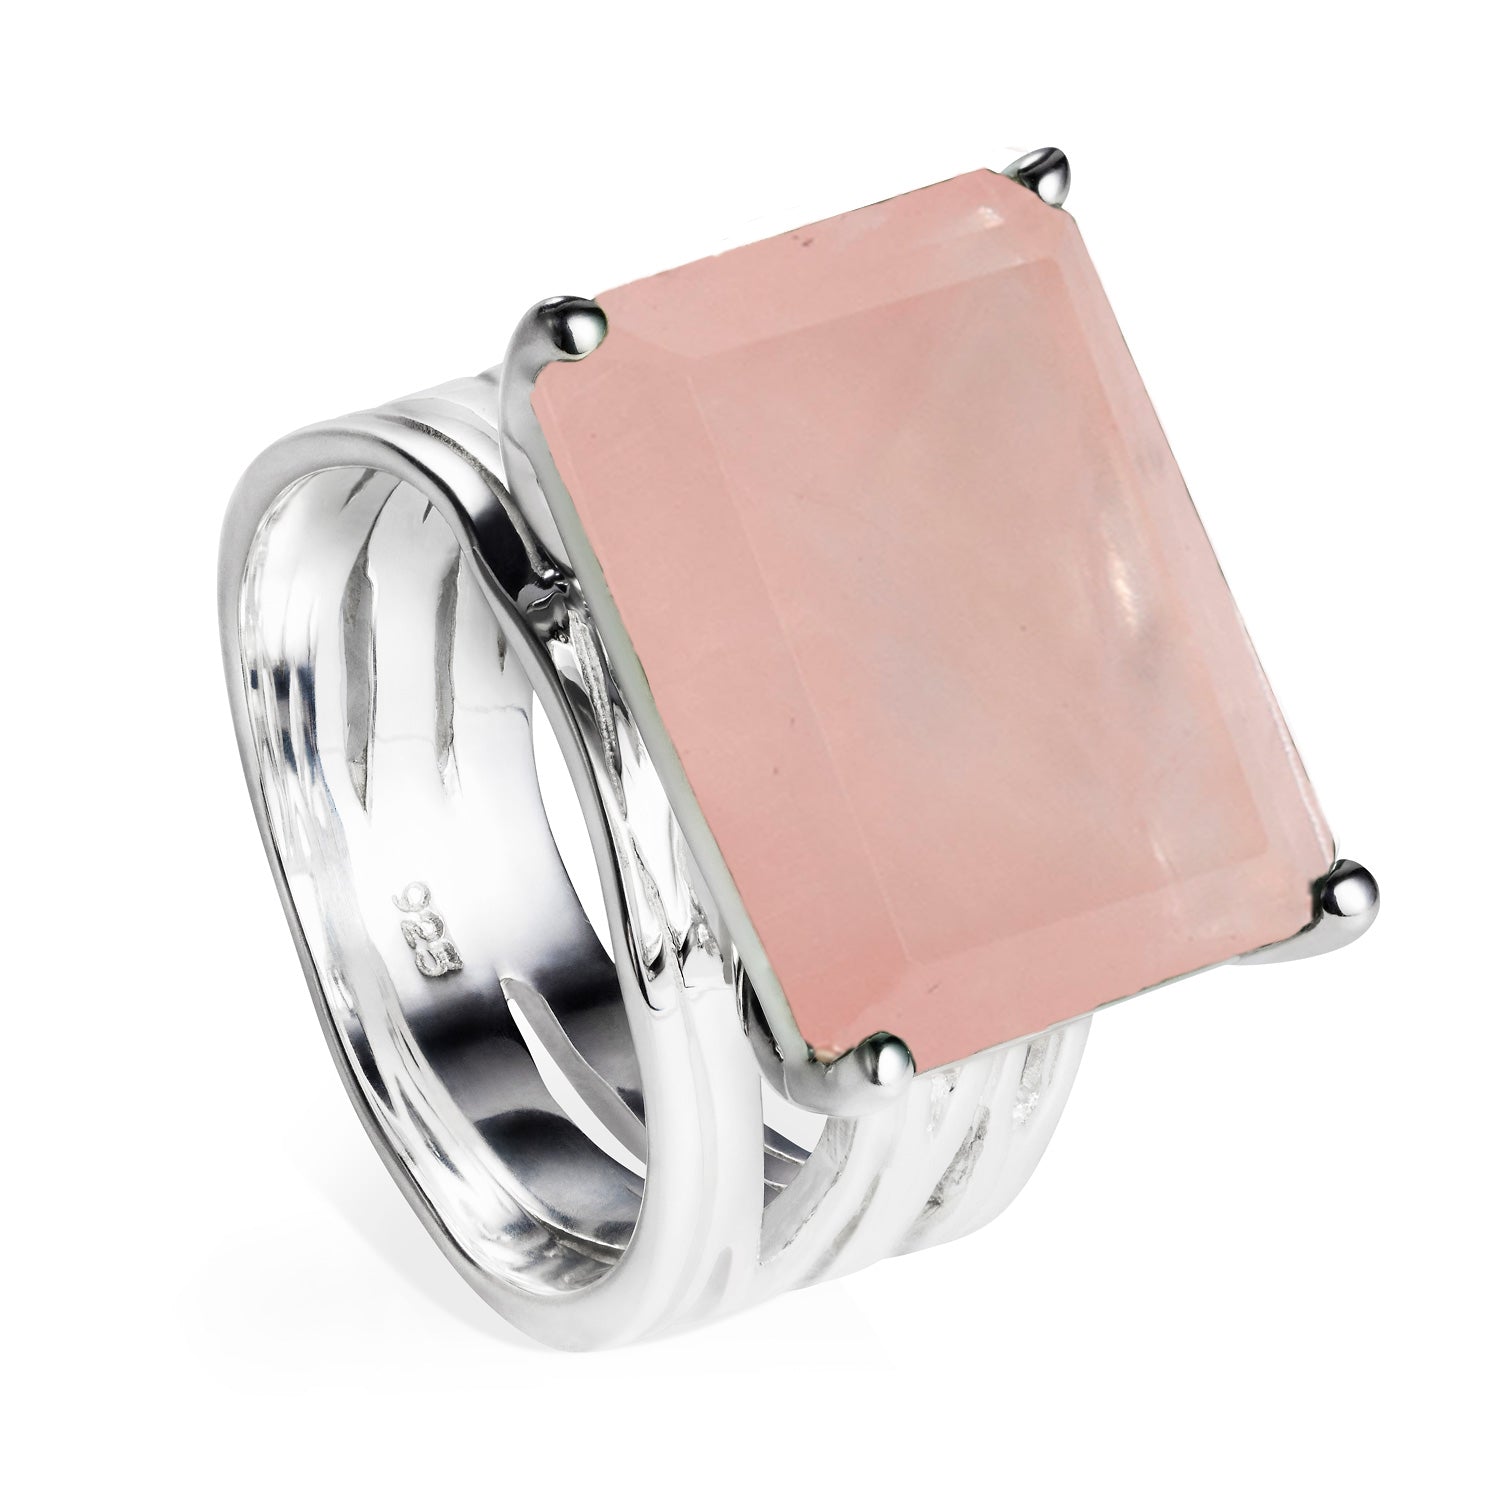 Sterling silver cocktail ring, rose quartz gemstone, geometric, unique British design